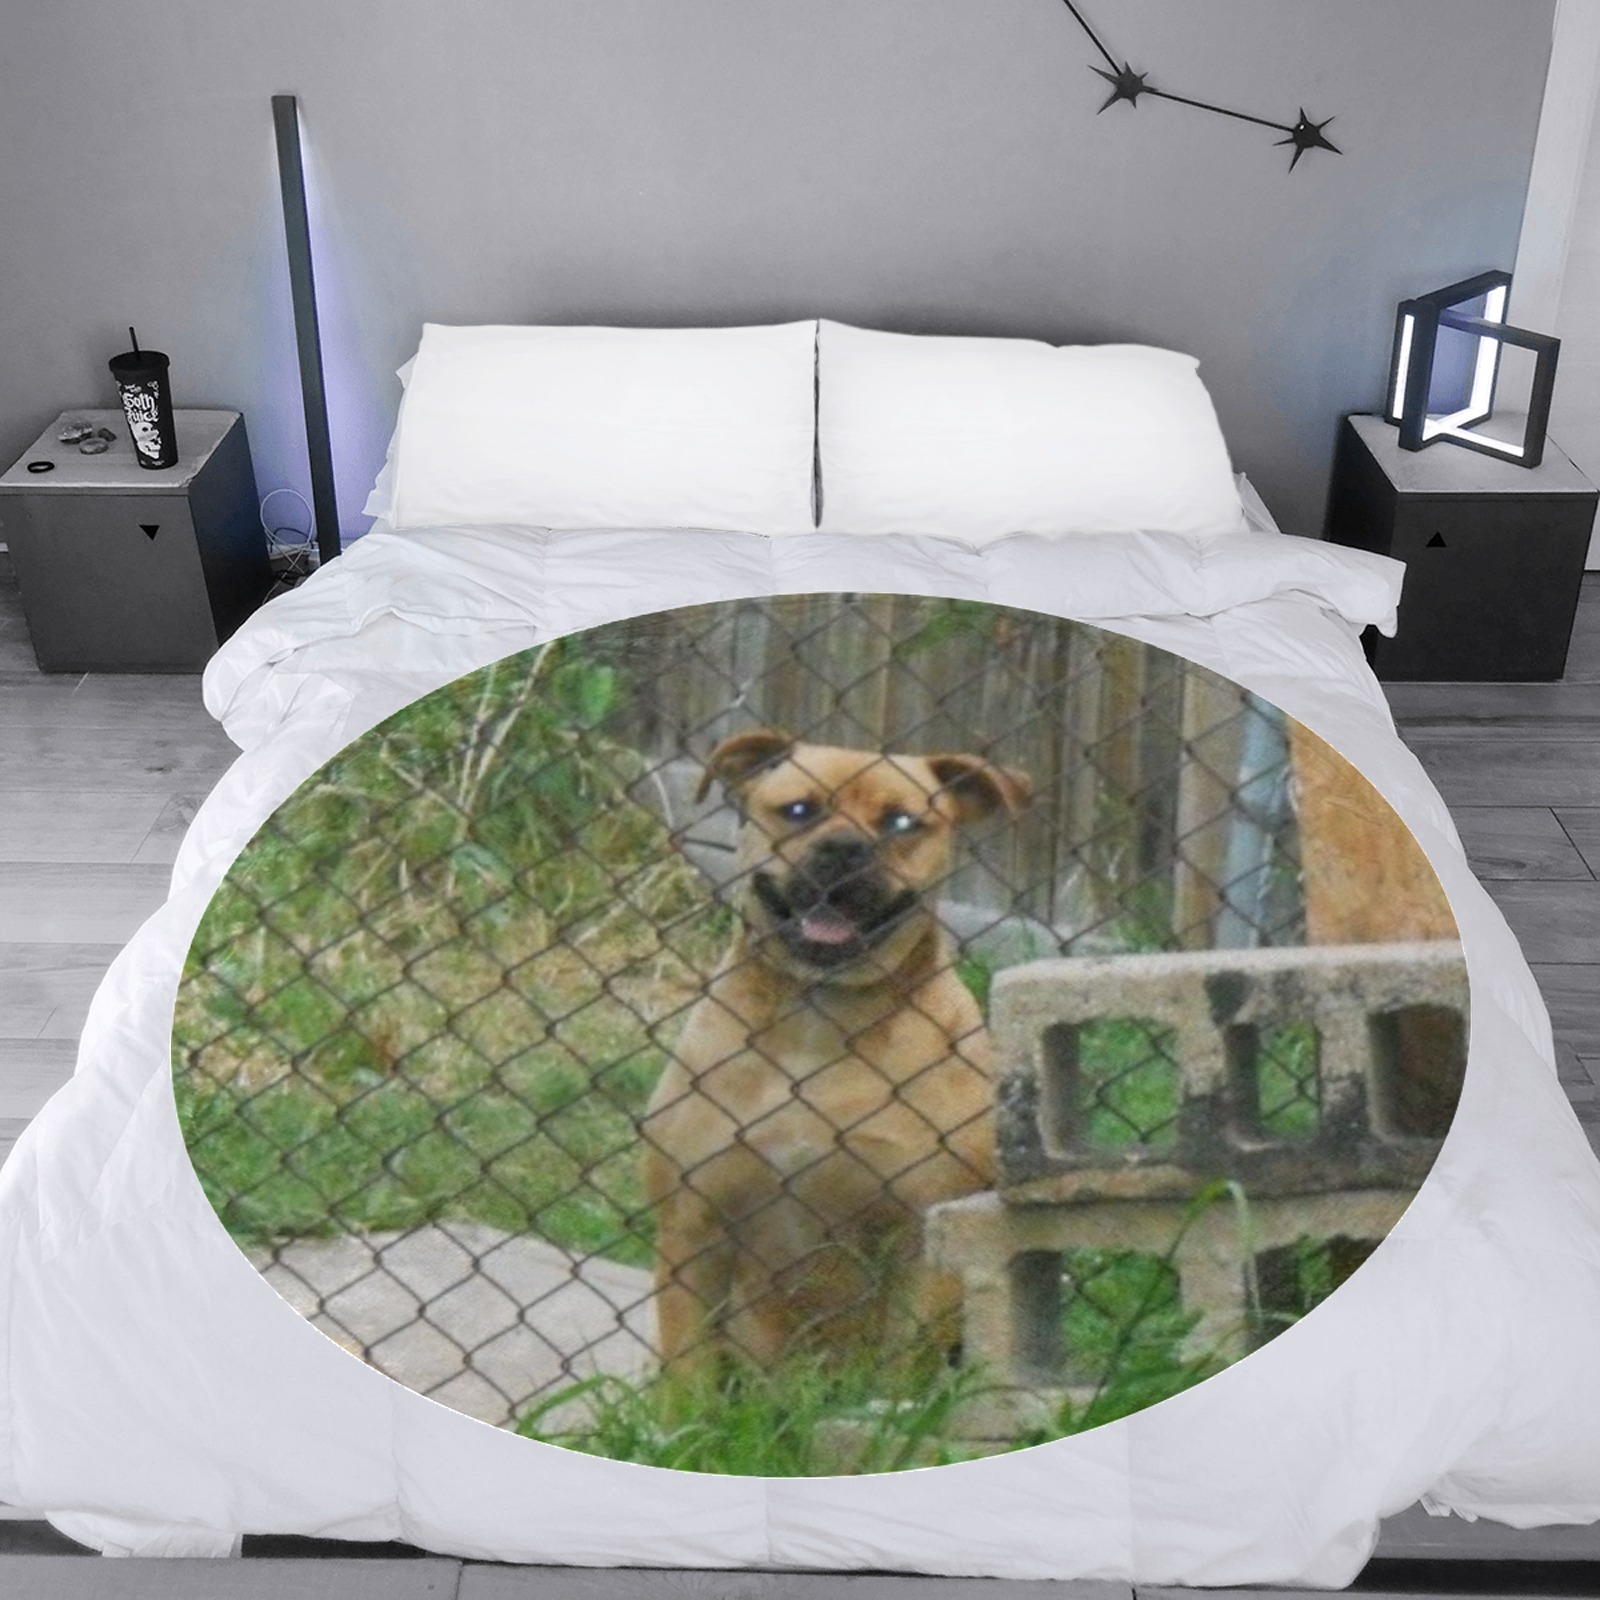 A Smiling Dog Circular Ultra-Soft Micro Fleece Blanket 60"